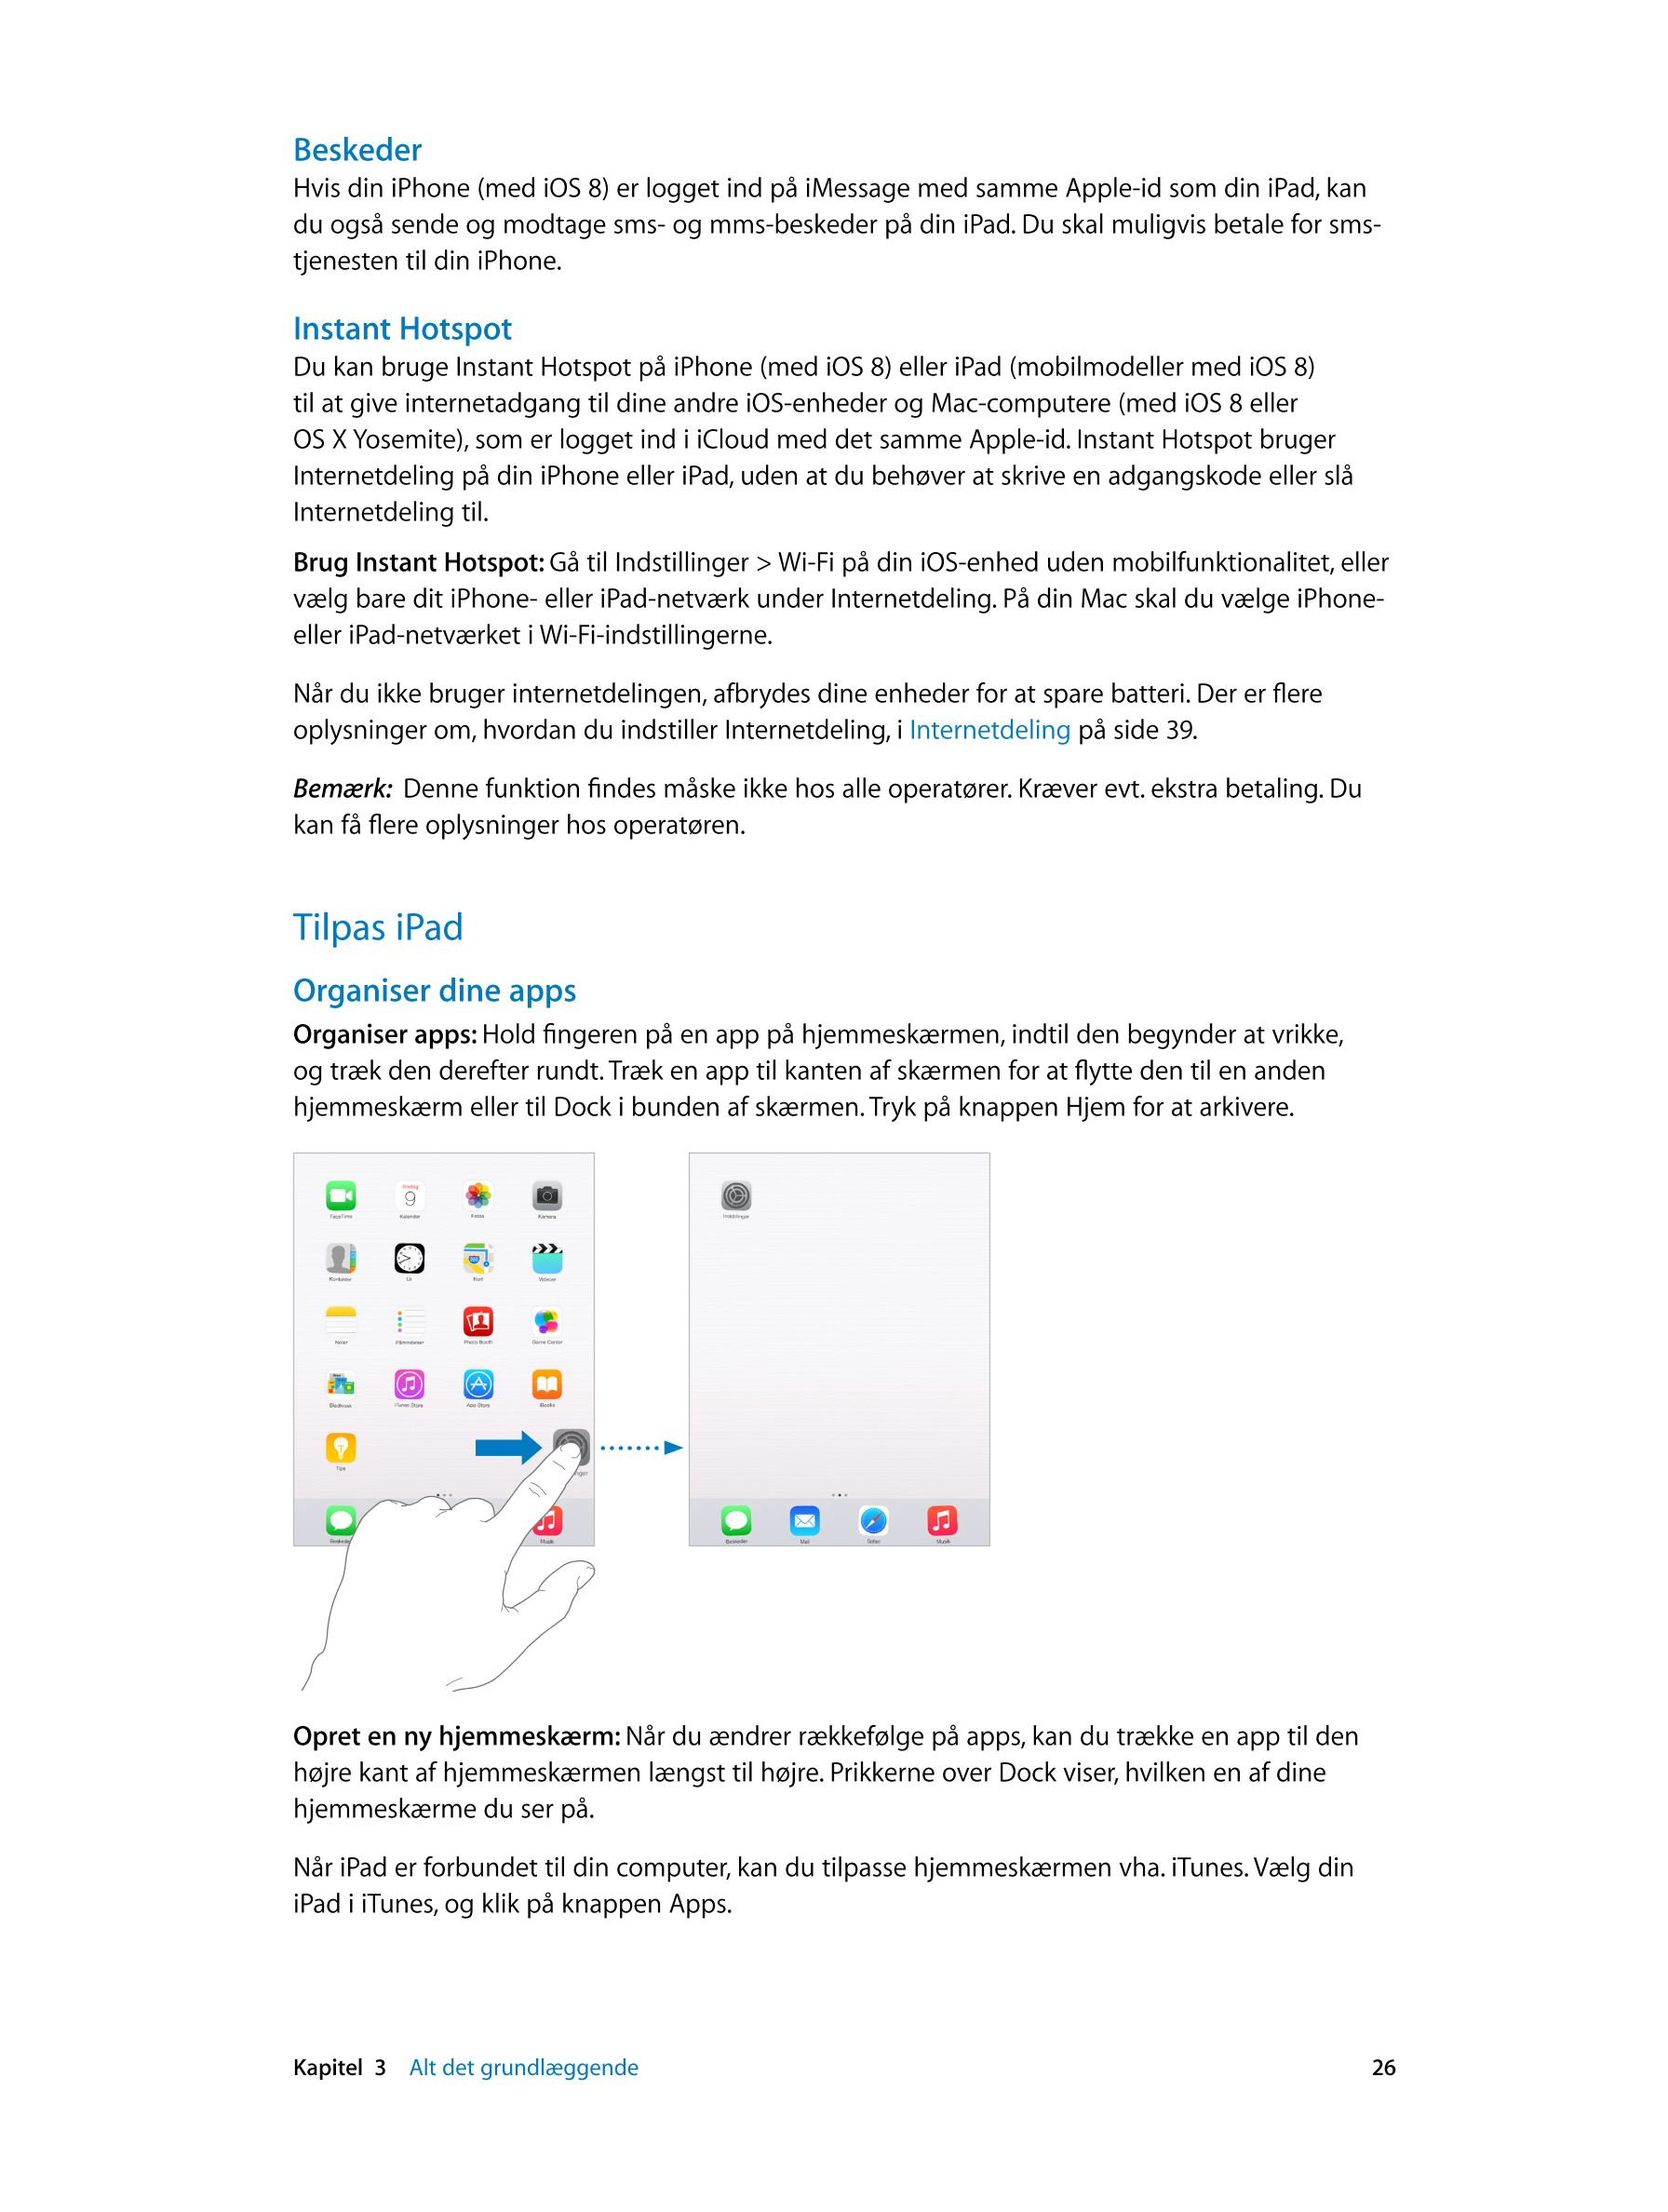 Beskeder
Hvis din iPhone (med iOS 8) er logget ind på iMessage med samme Apple-id som din iPad, kan 
du også sende og modtage sm